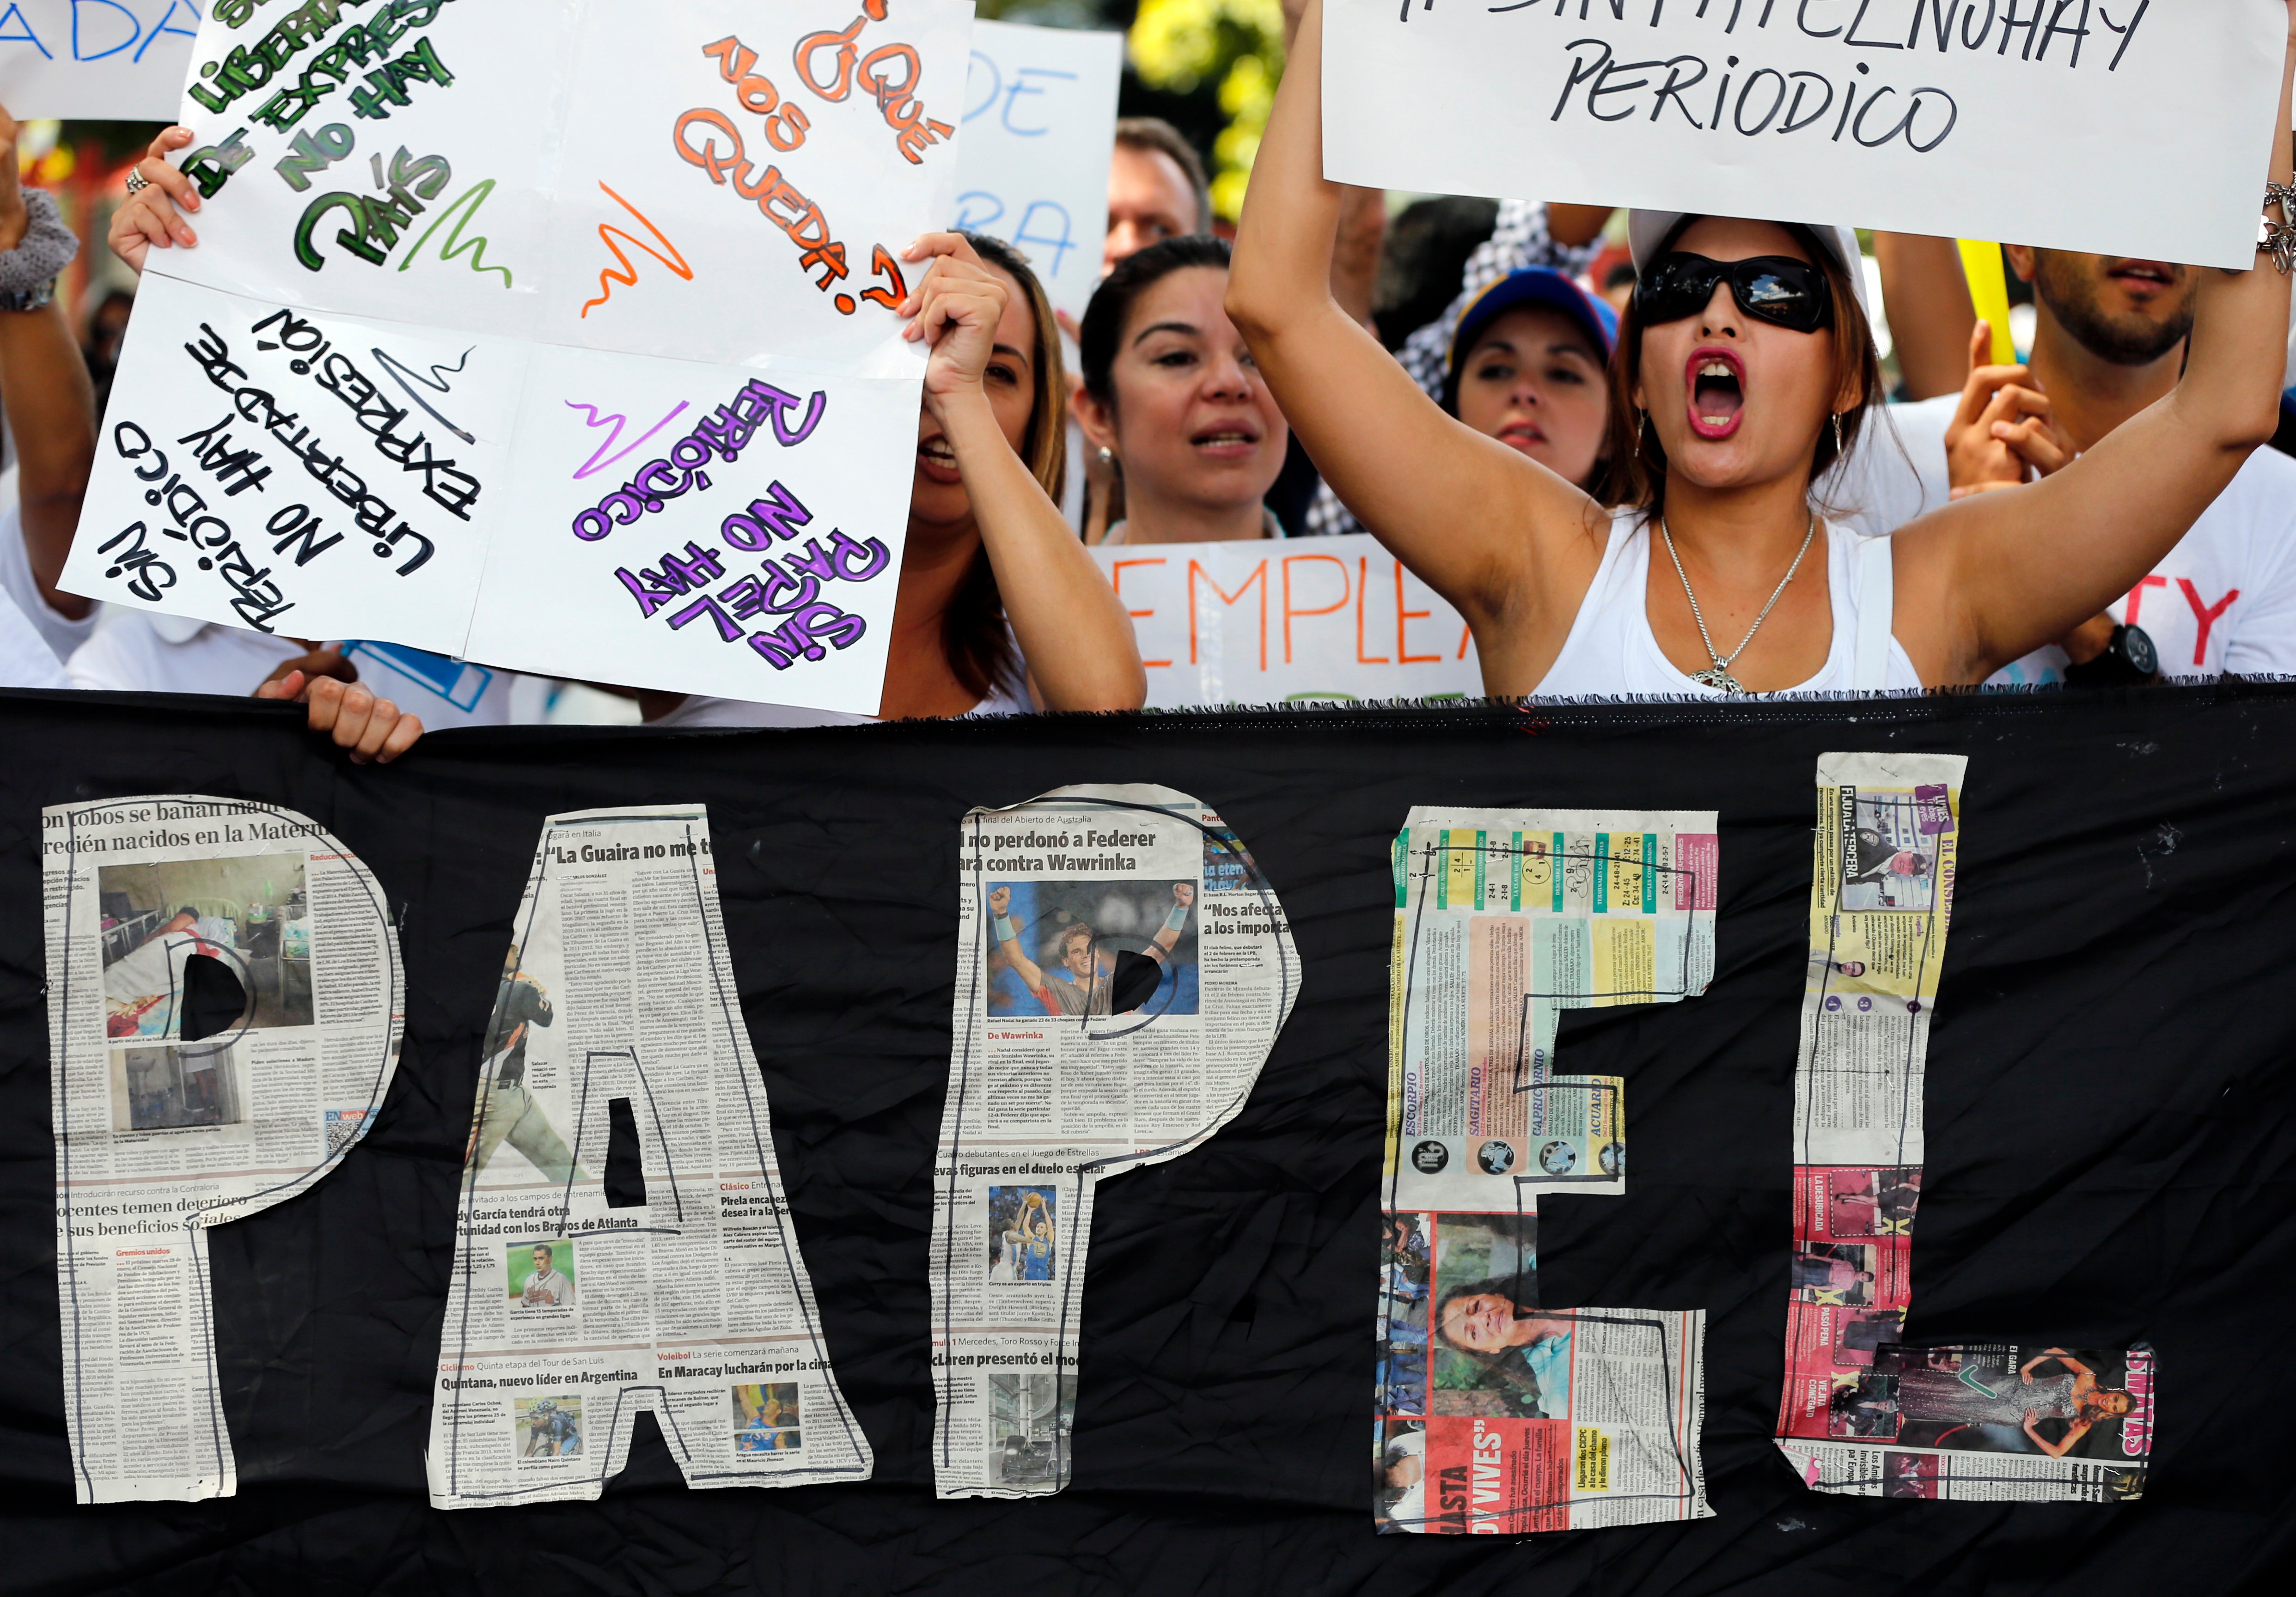 Ipys Venezuela: Al menos 11 medios impresos suspenderán ediciones para ahorrar papel